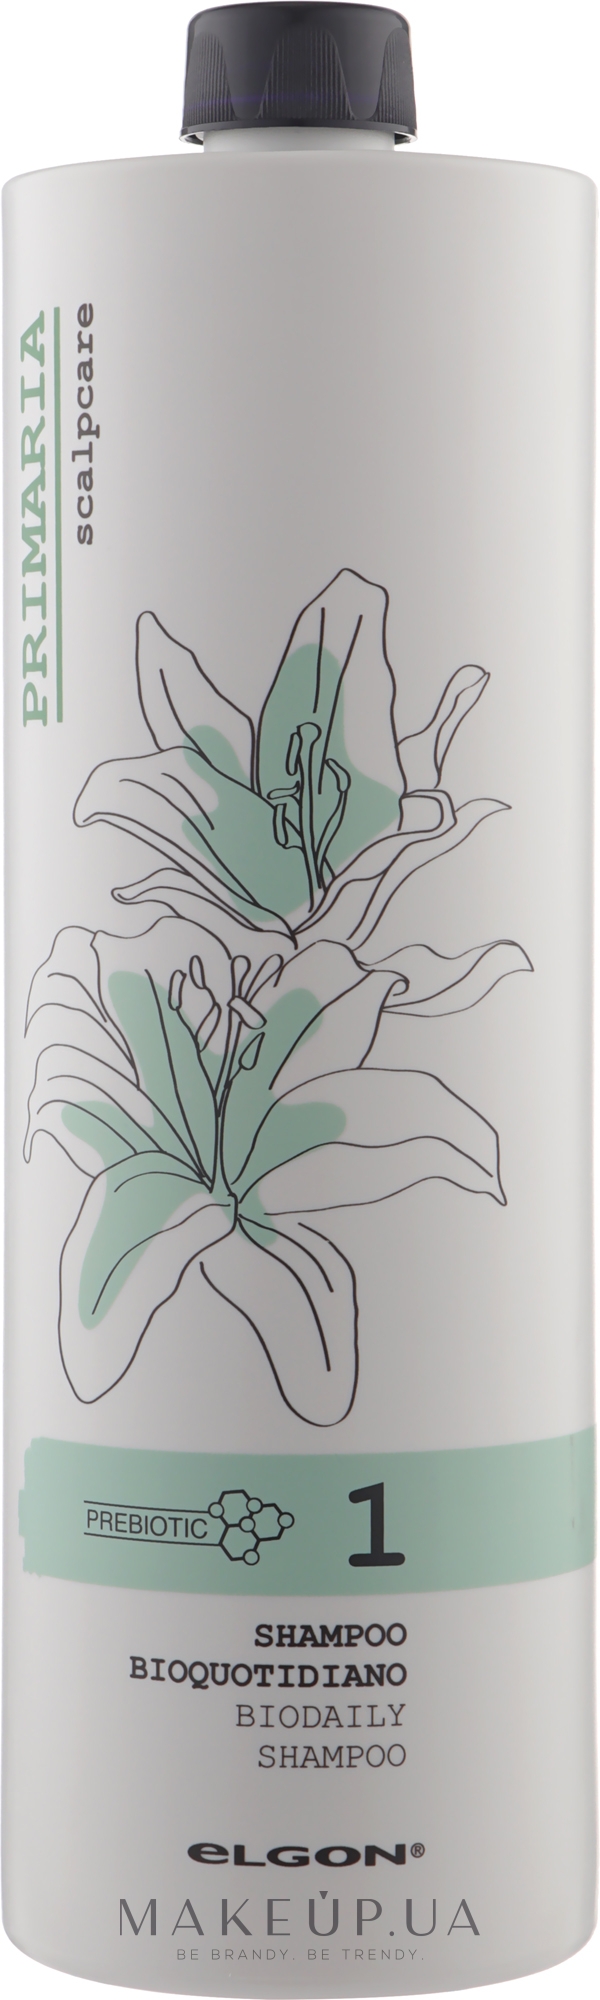 Деликатный шампунь для ежедневного применения - Elgon Primaria Biodaily Shampoo — фото 1000ml